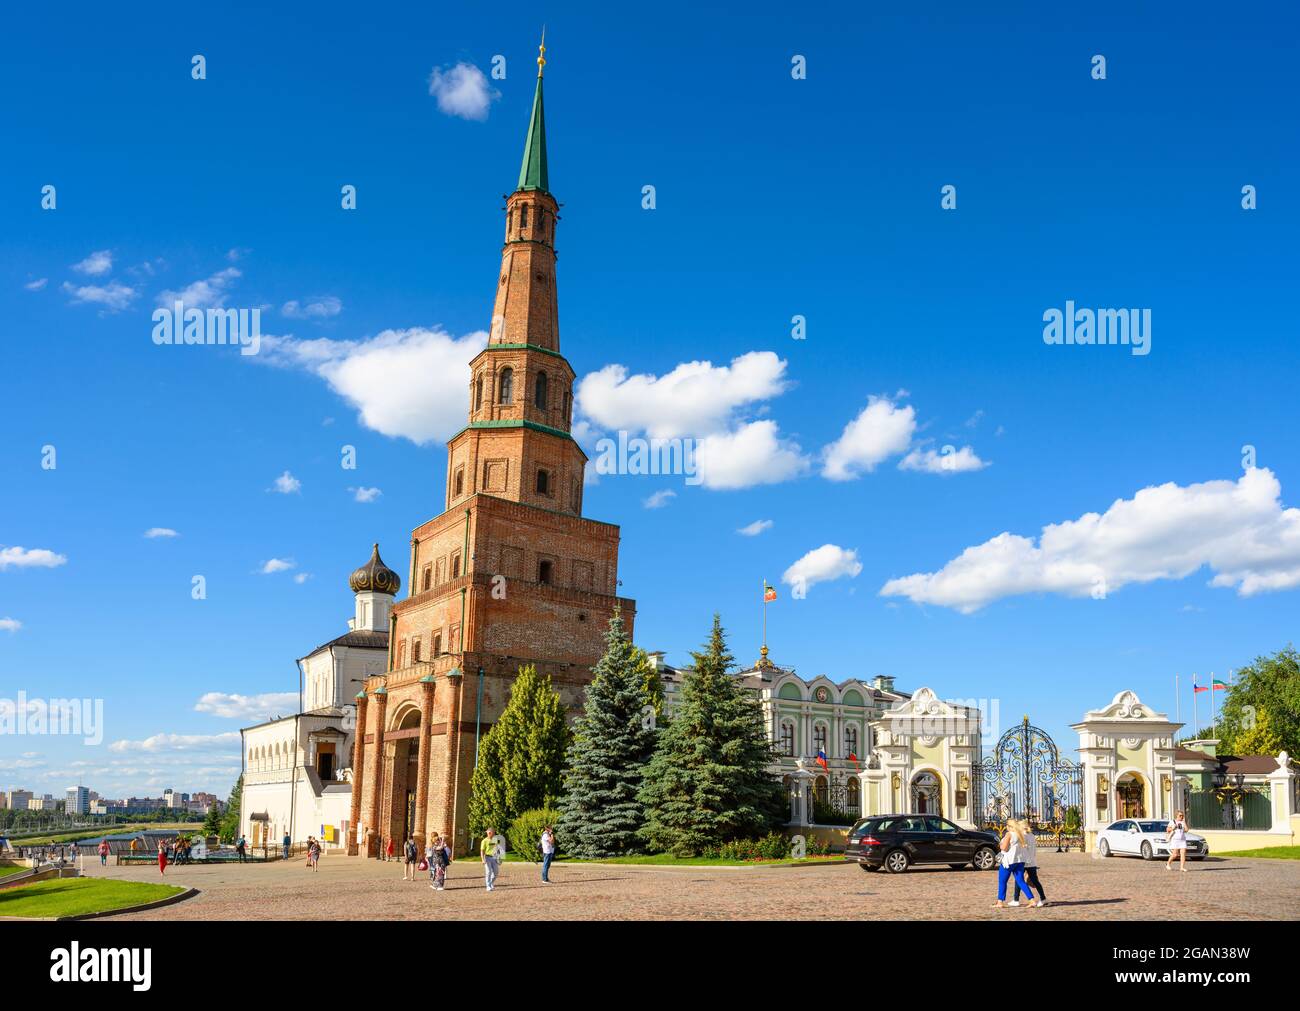 Suyumbike Tower in Kasan Kreml, Tatarstan, Russland. Dieses schiefe Gebäude ist eine berühmte Touristenattraktion von Kazan. Blick auf das alte Wahrzeichen und Stockfoto